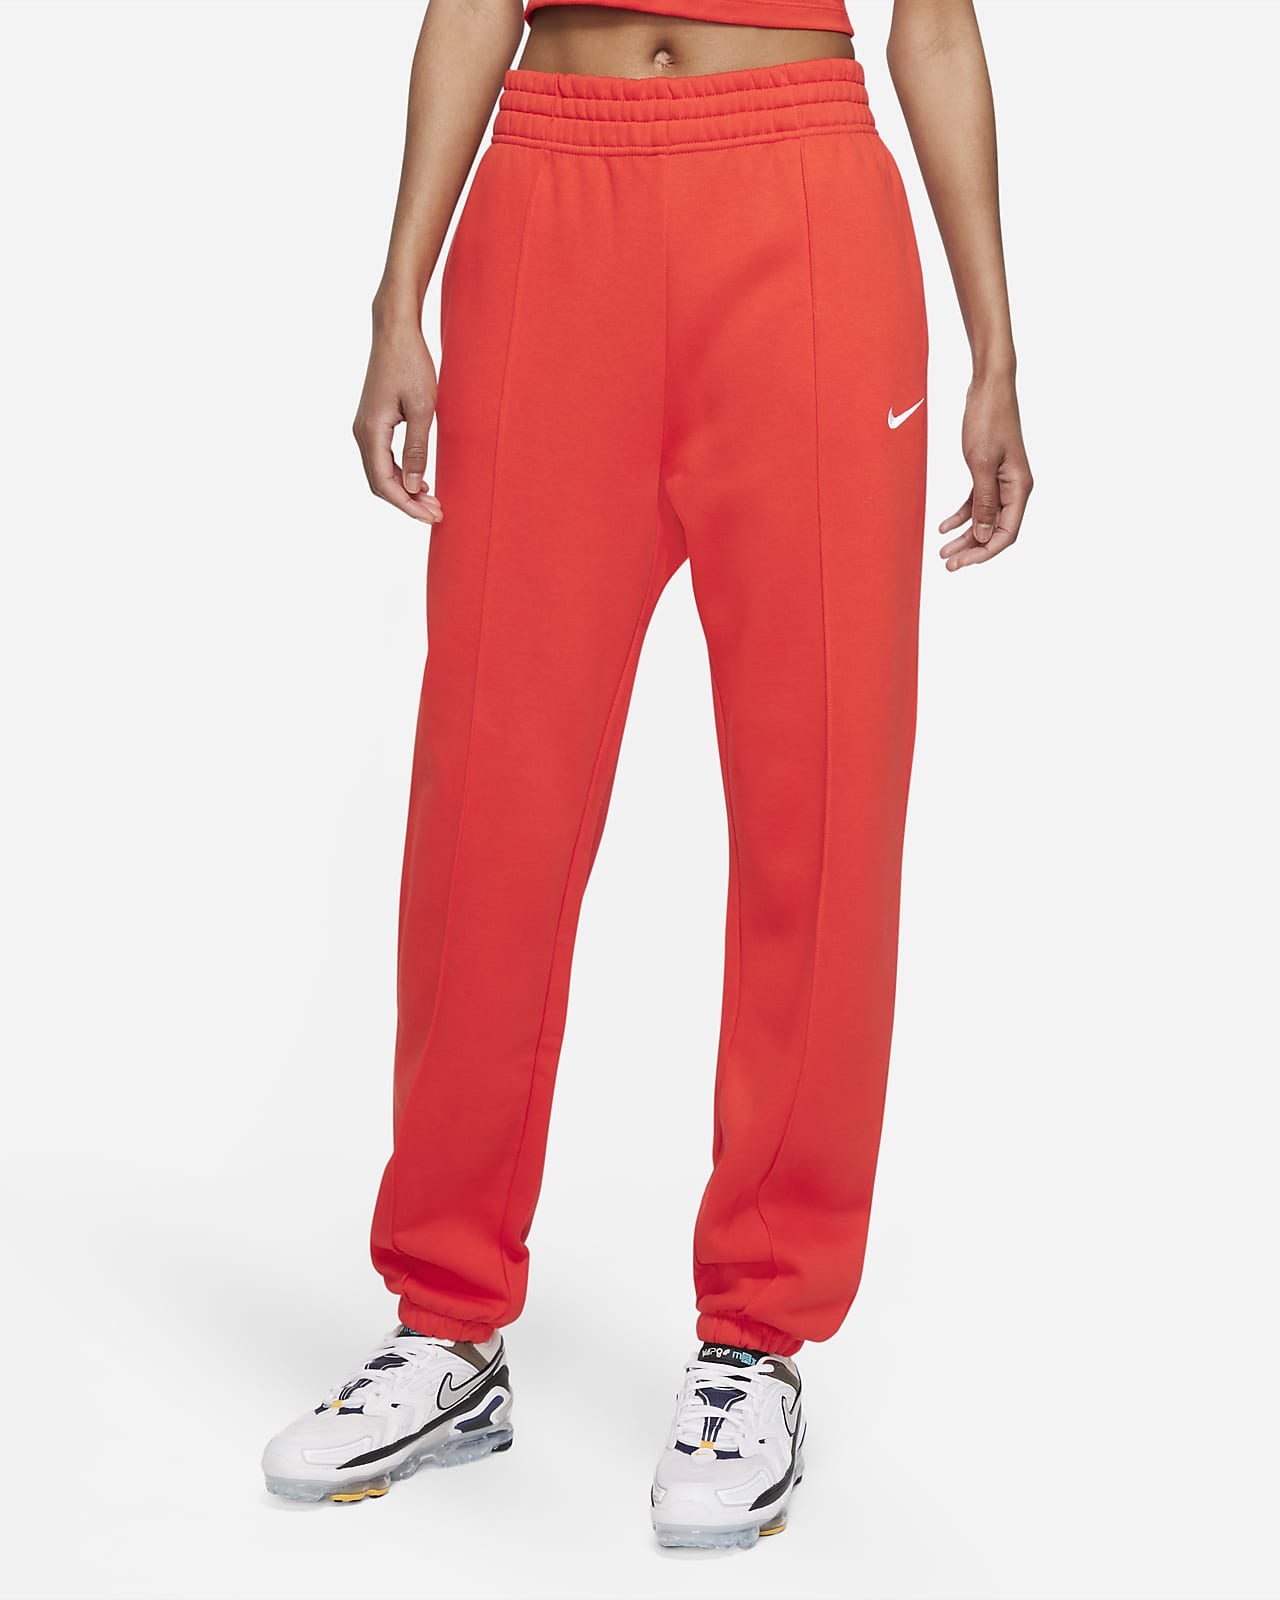 Γυναικείο φλις παντελόνι Nike Sportswear Essential Collection